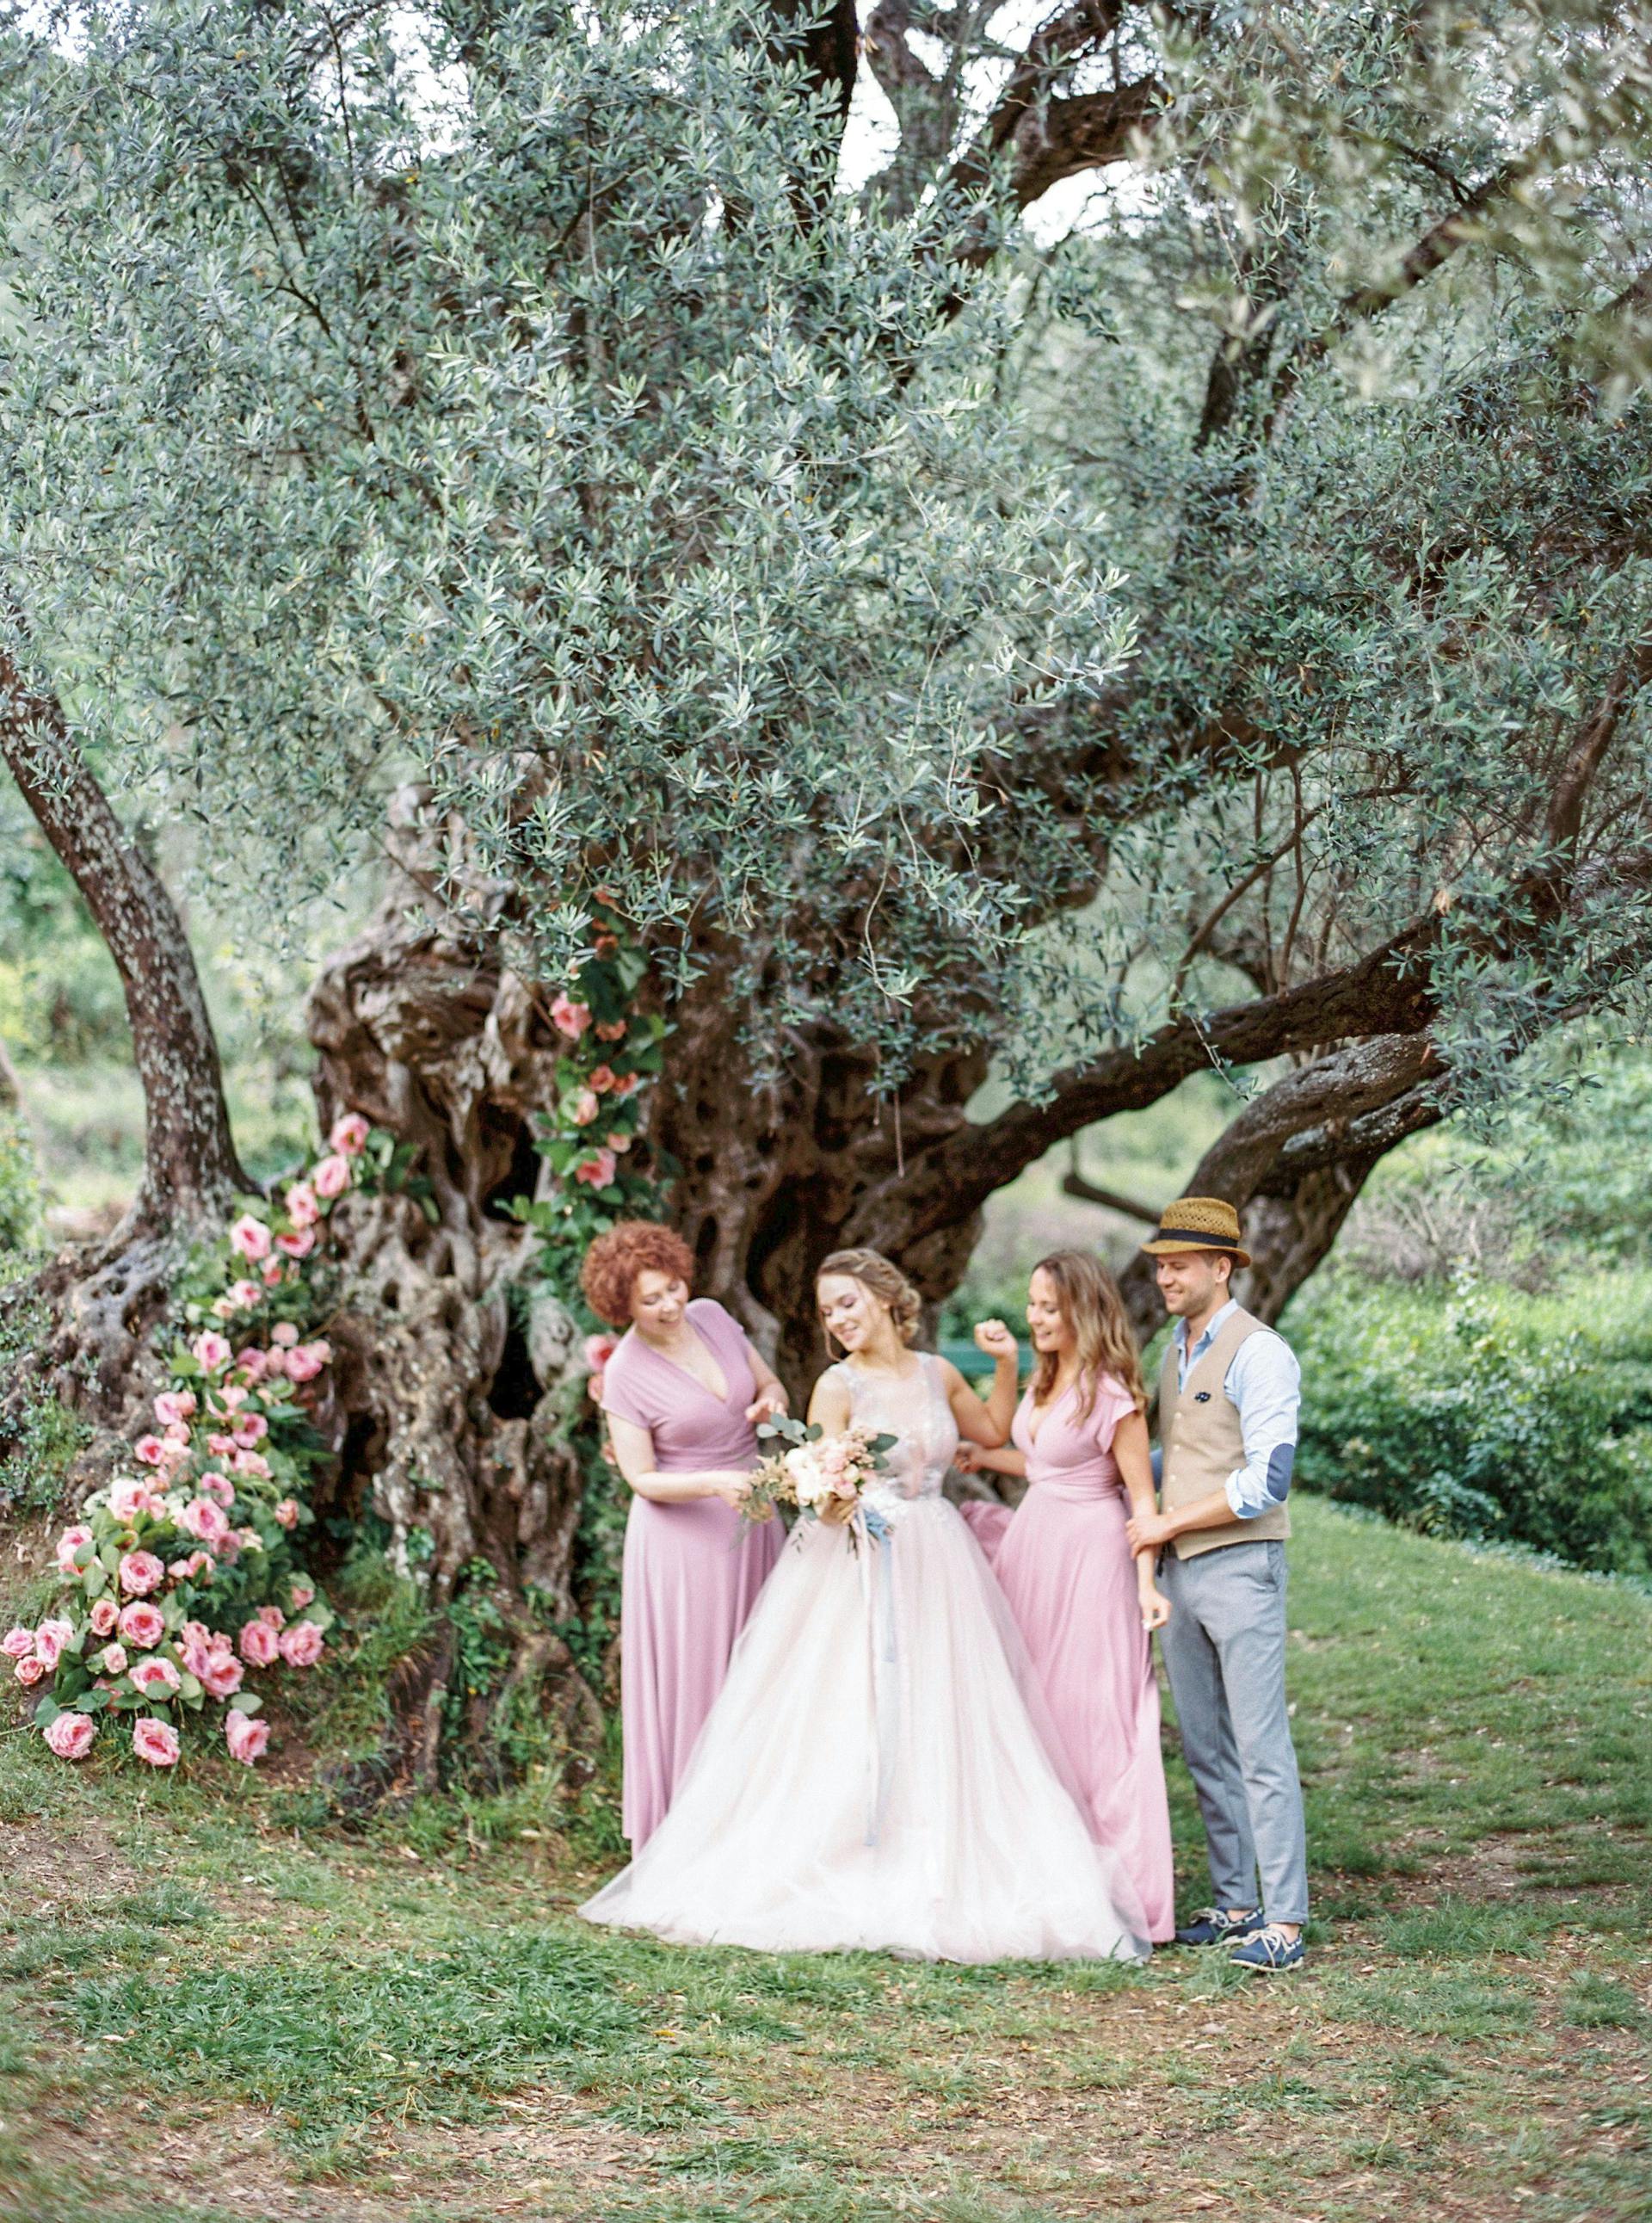 Una novia posando para las fotos con su familia bajo un árbol | Fuente: Pexels